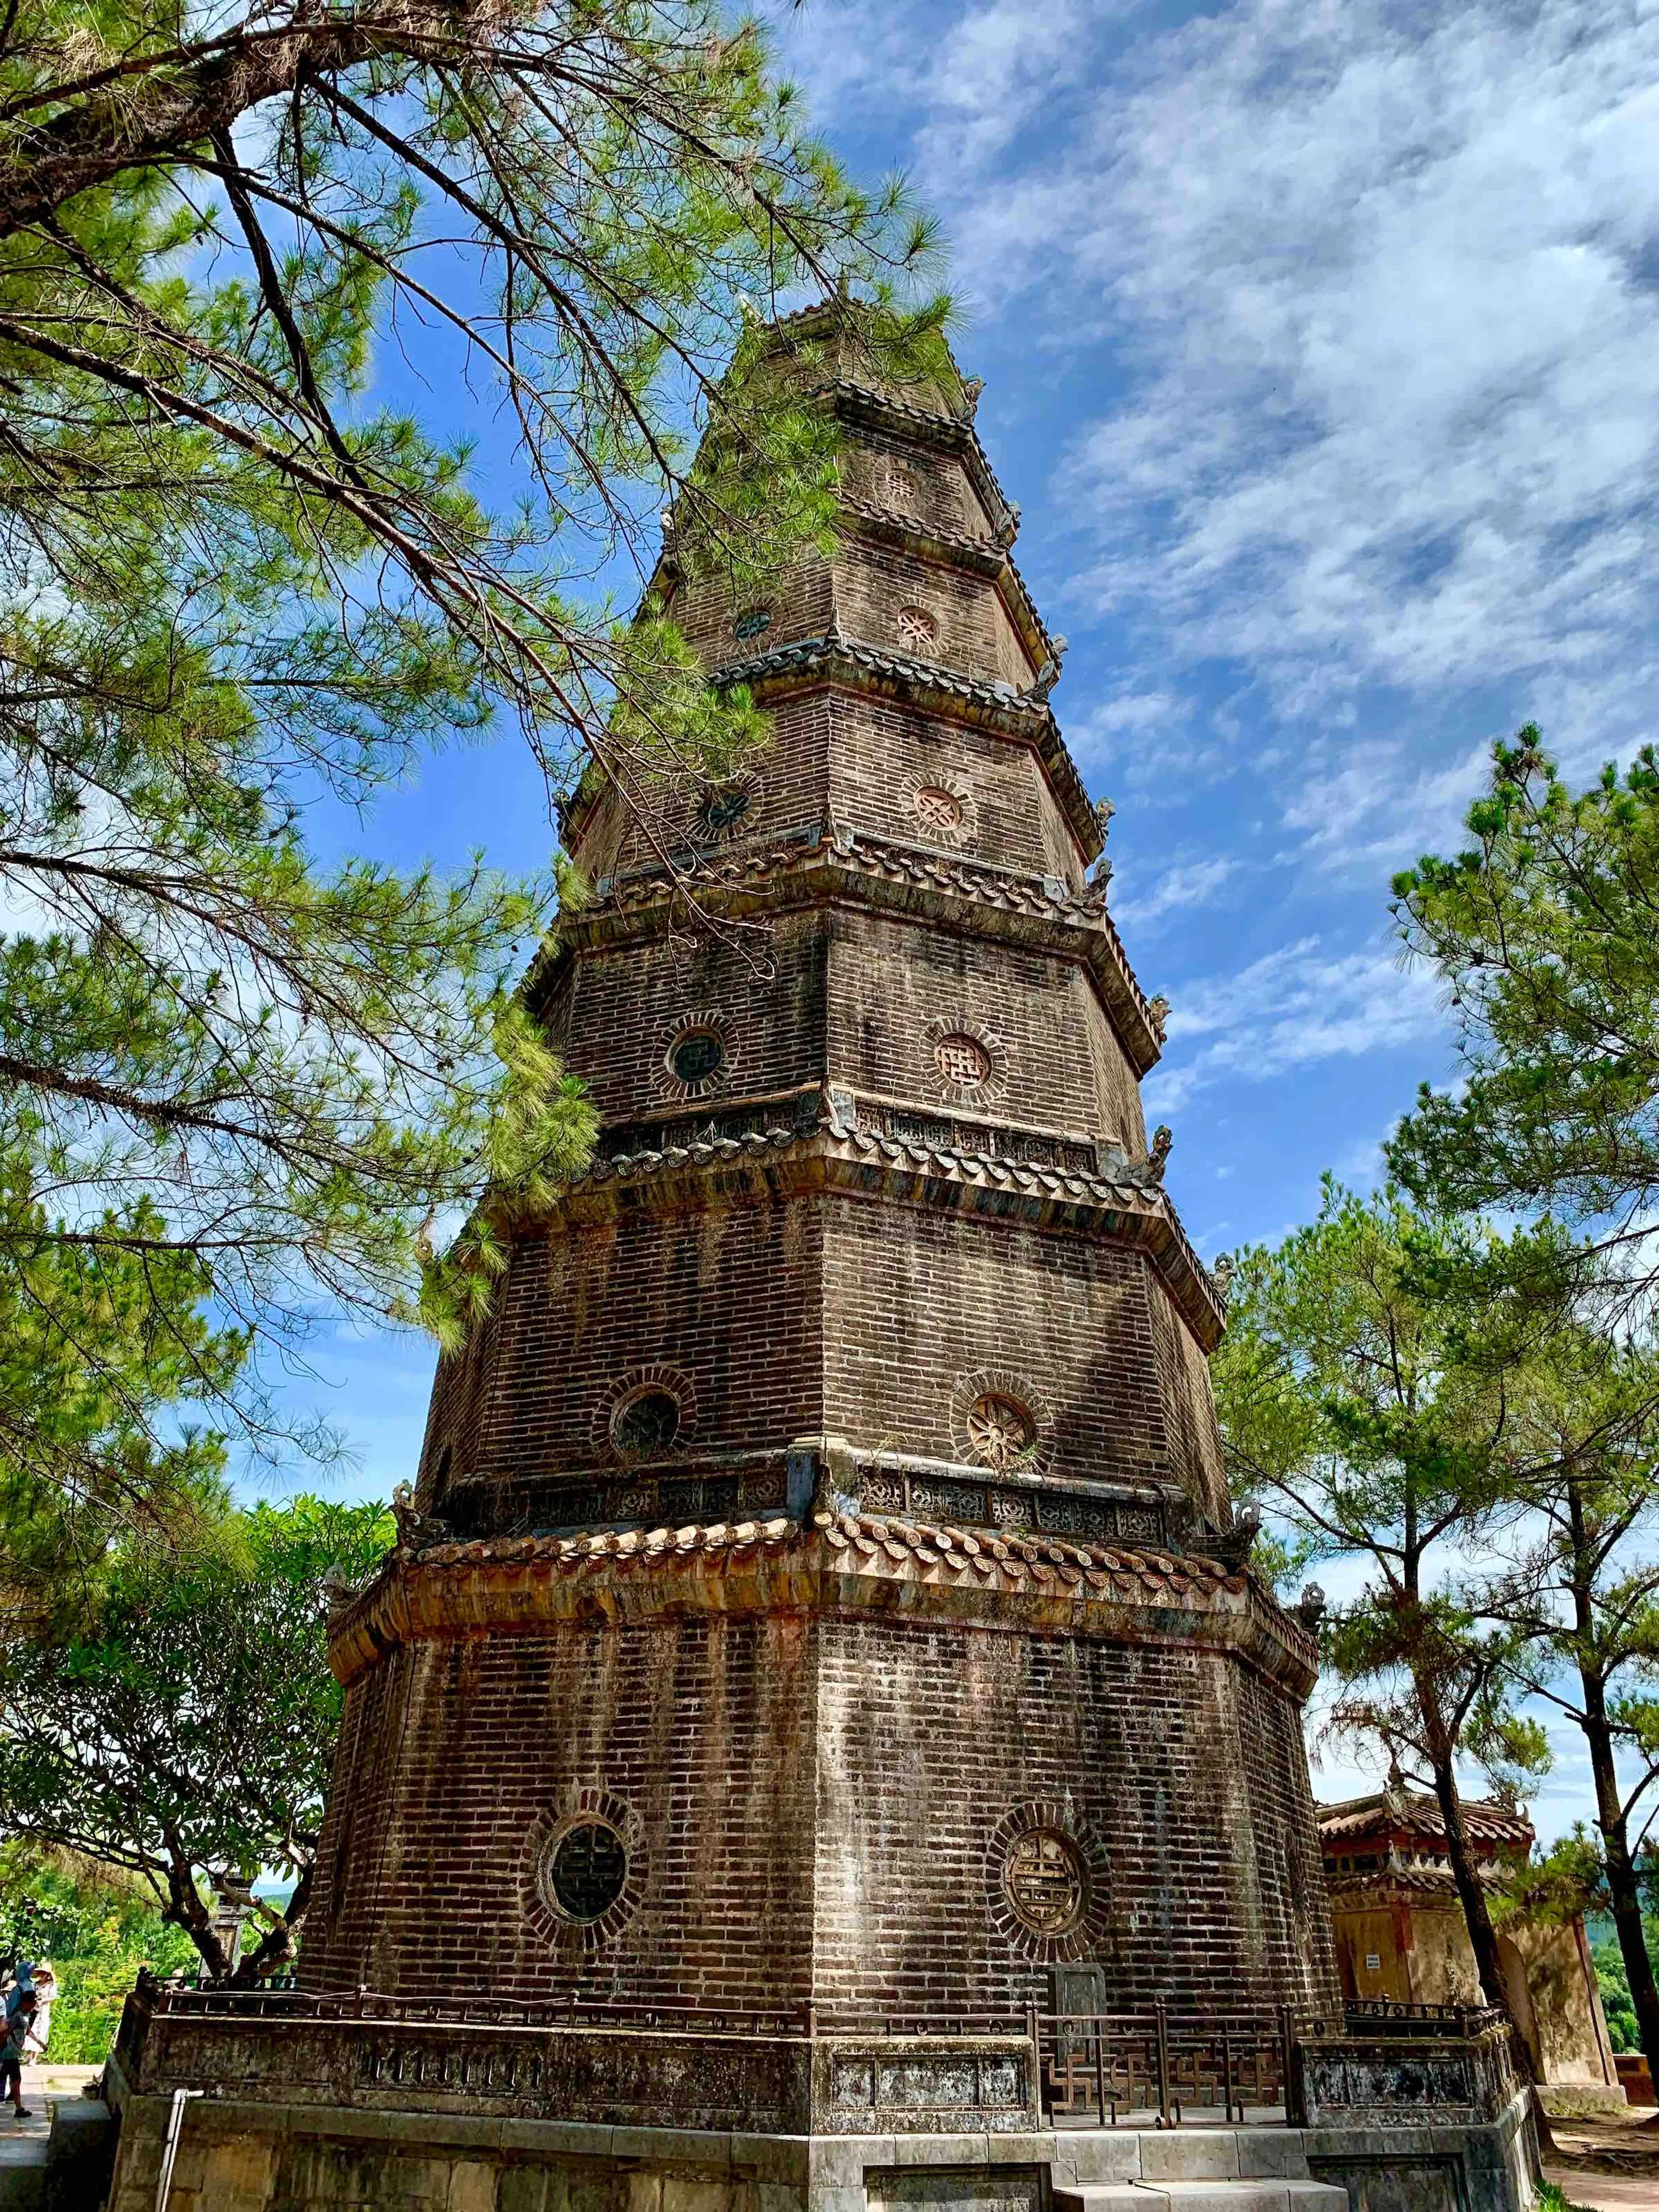 Thien Mu Pagoda - The most famous destination of Hue Imprerial City - Mr Biker Saigon